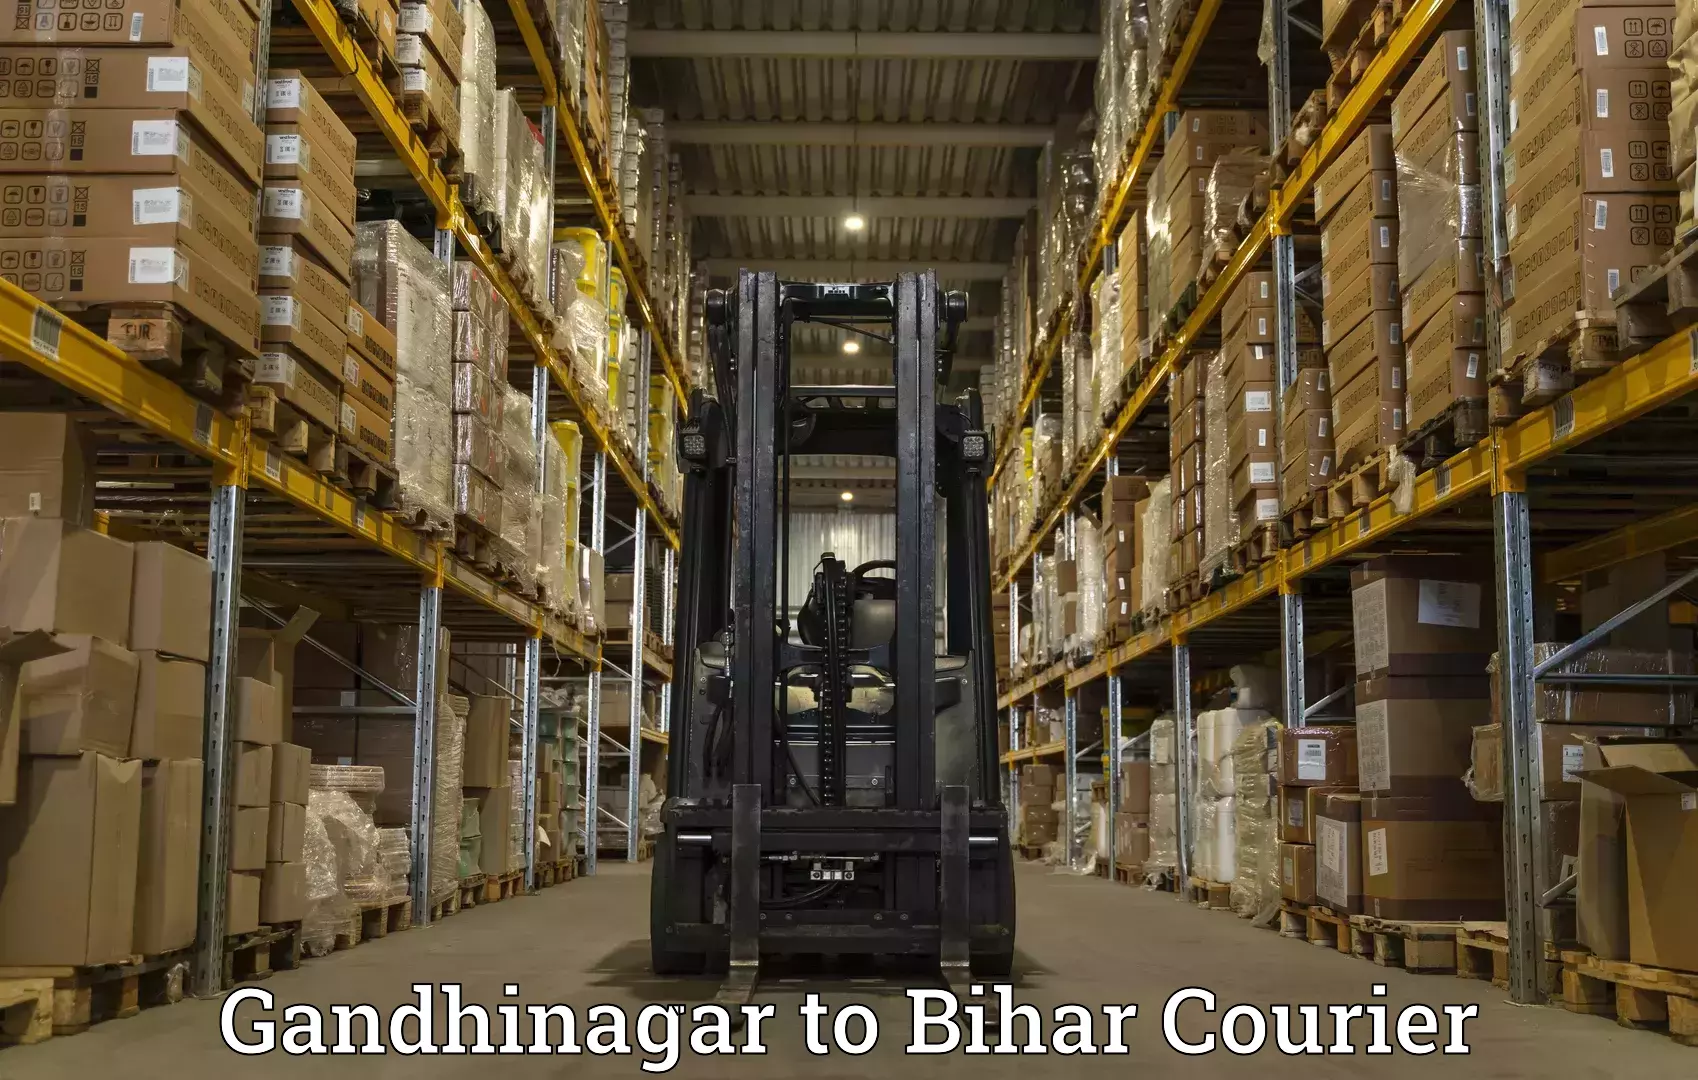 Comprehensive shipping network Gandhinagar to Sheikhpura